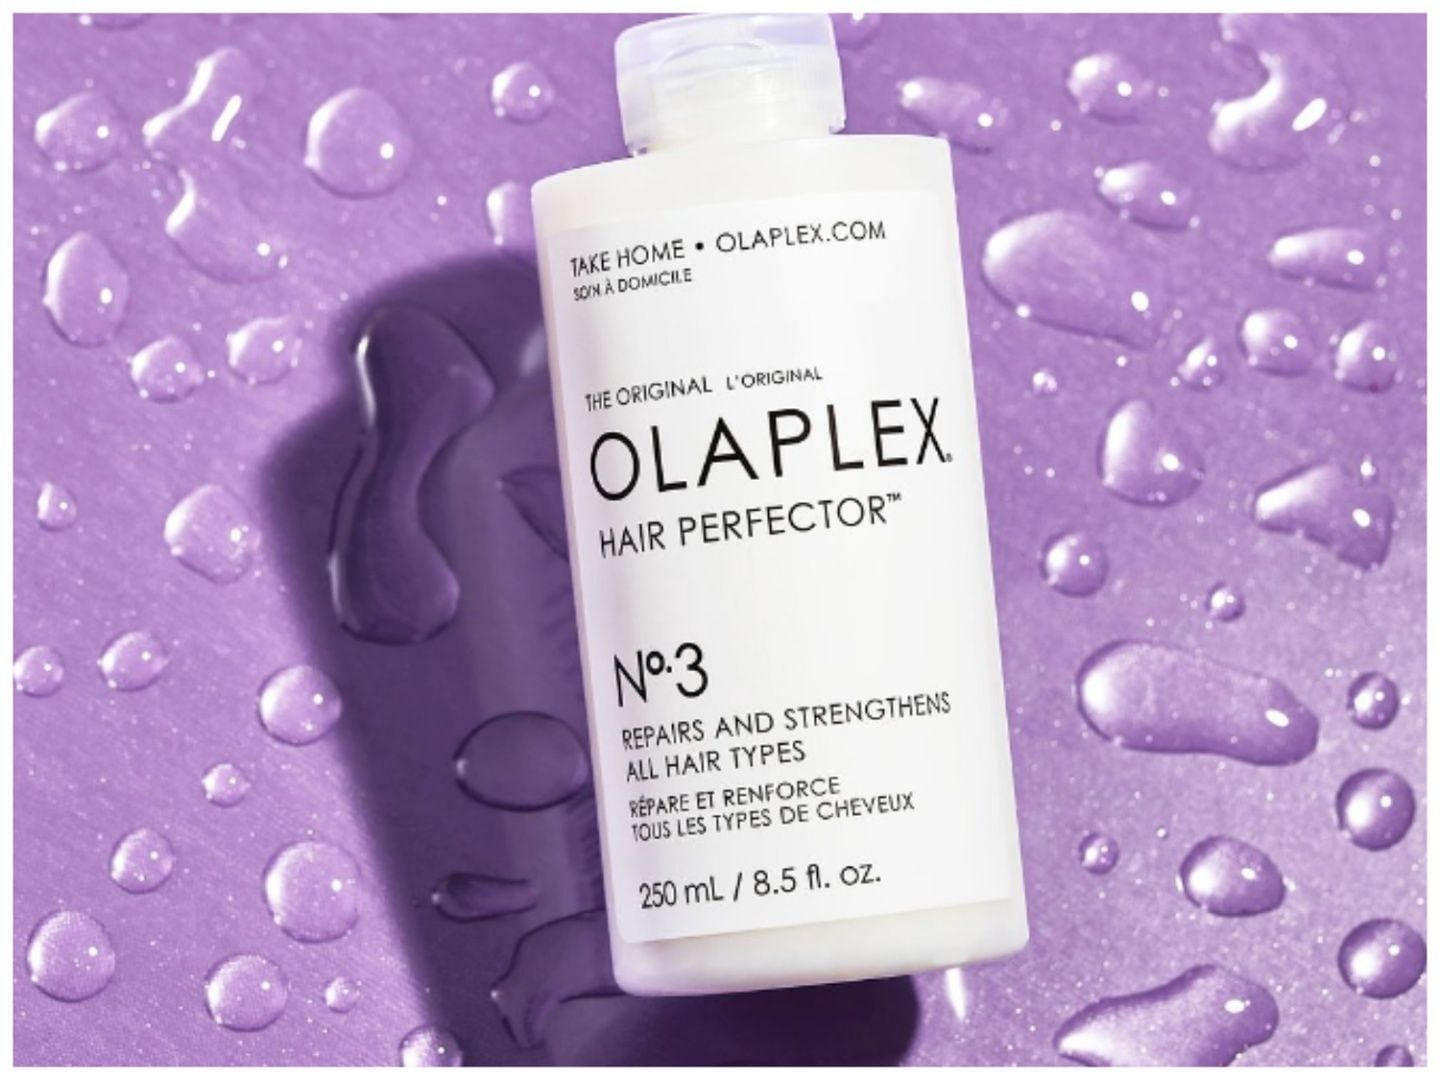 Is olaplex good for hair? (Image via IG @olaplex)